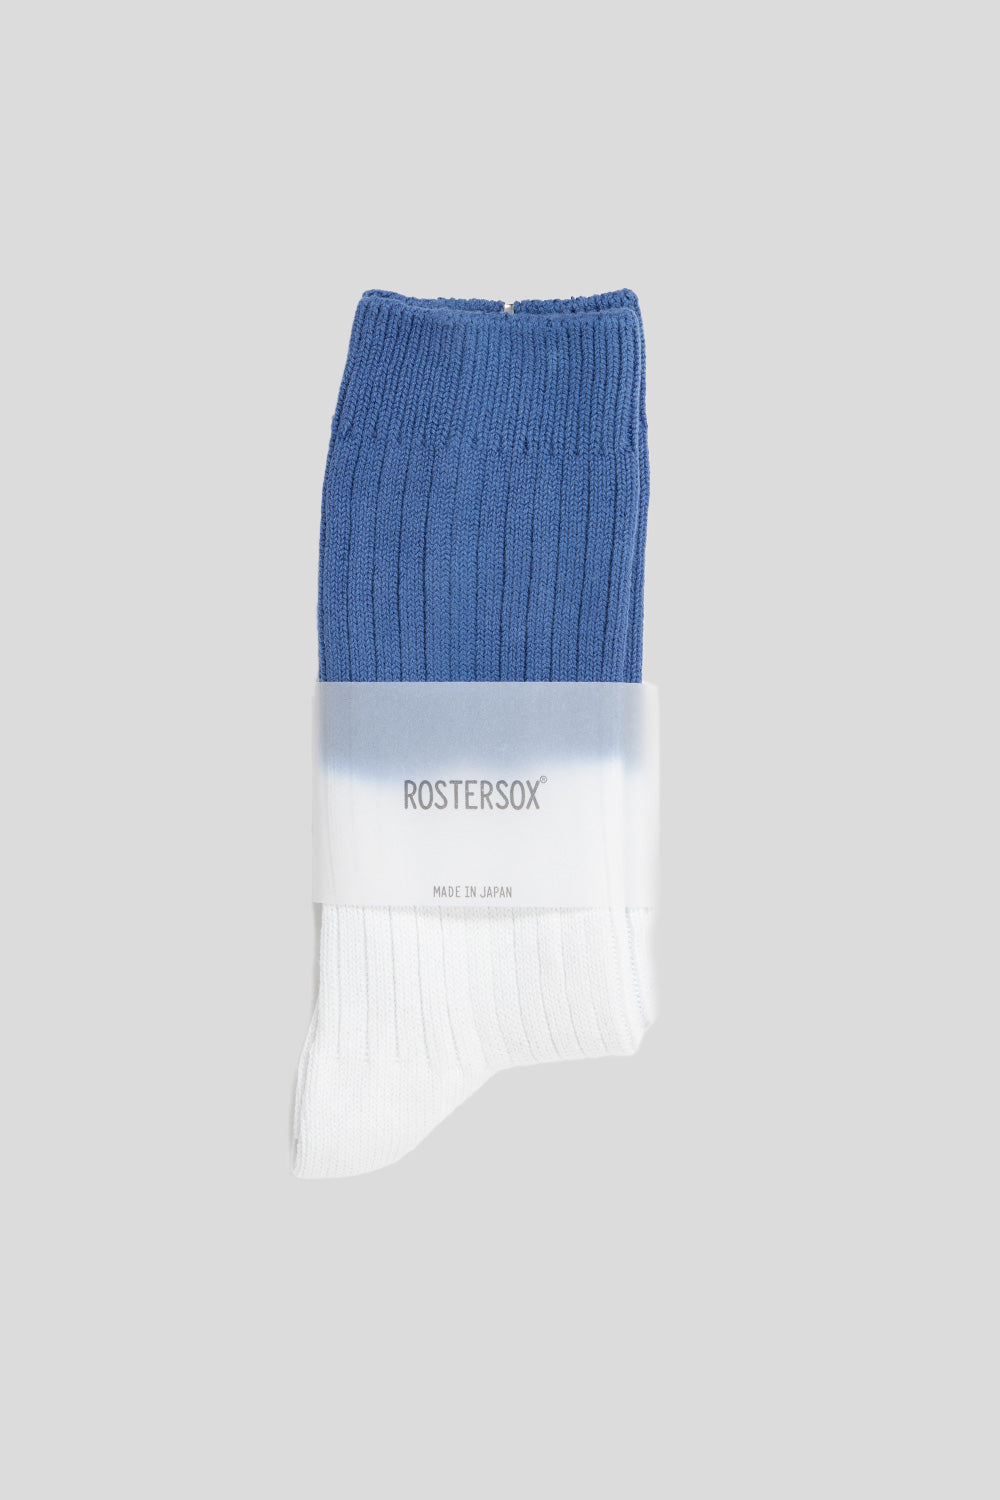 Rostersox HRD Rib Socks in Blue